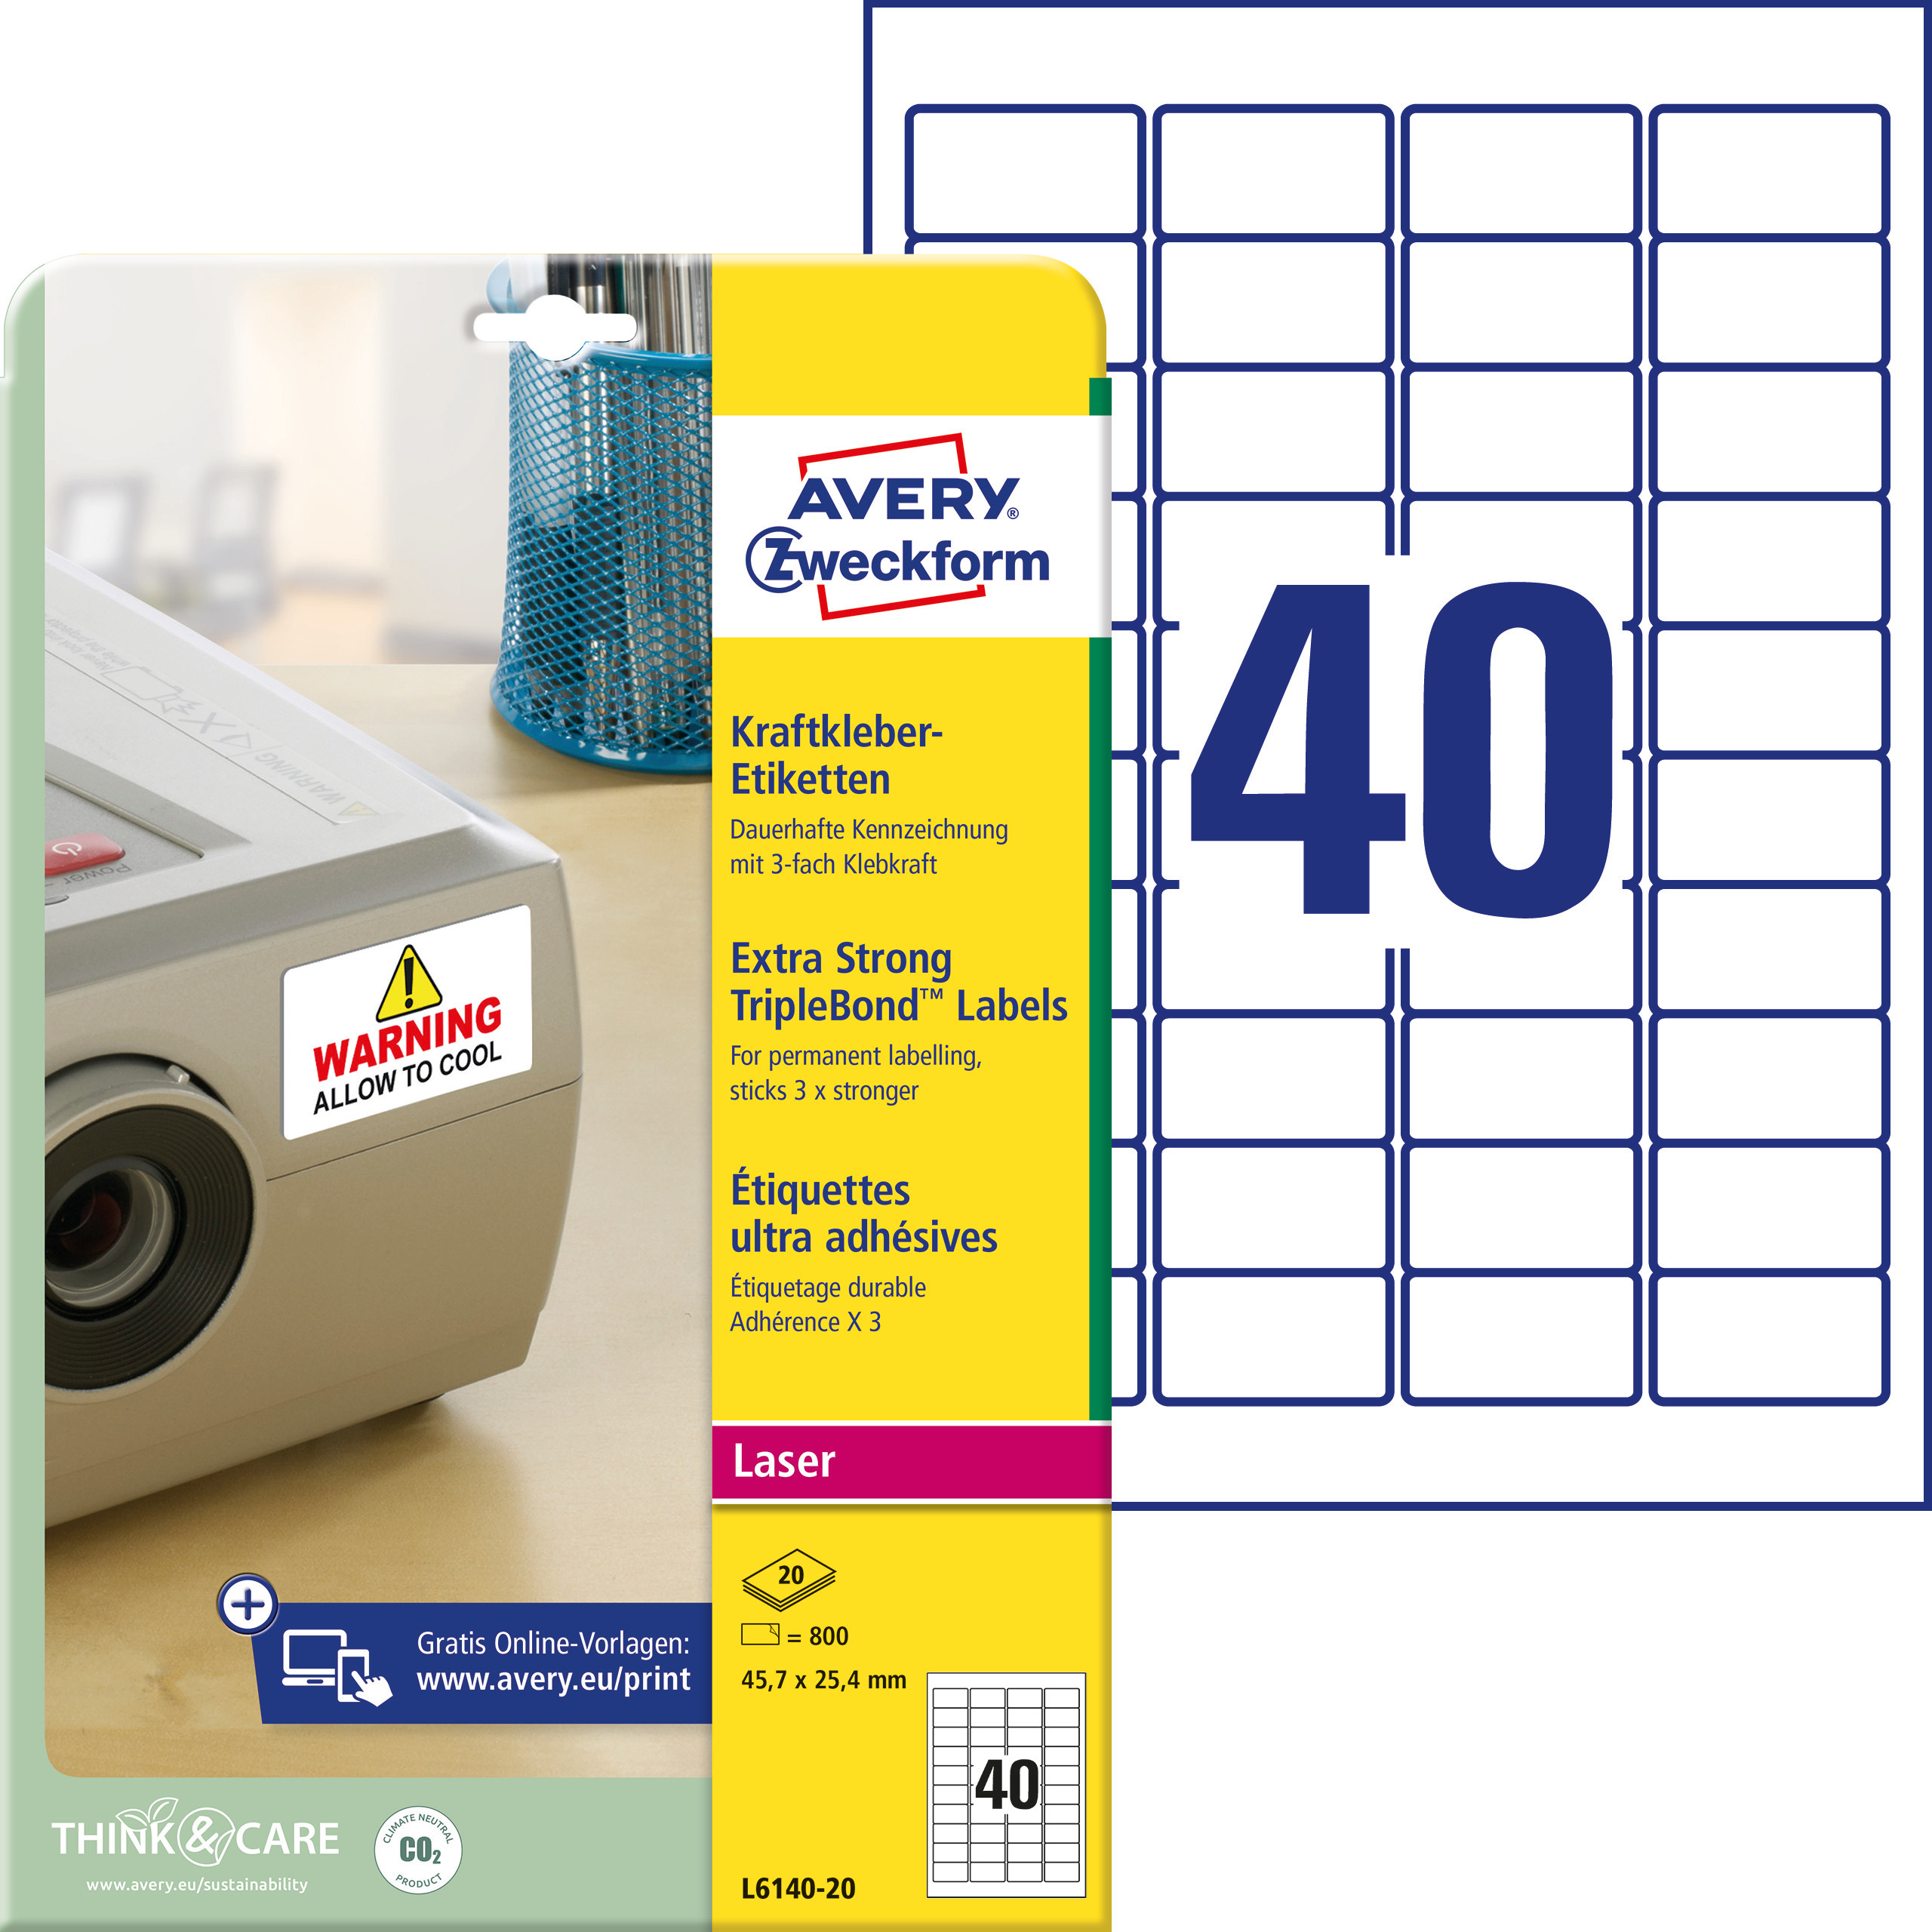 Samoprzylepne etykiety Triple Bond foliowe poliestrowe do drukarek laserowych - 40 etykiet na arkuszu